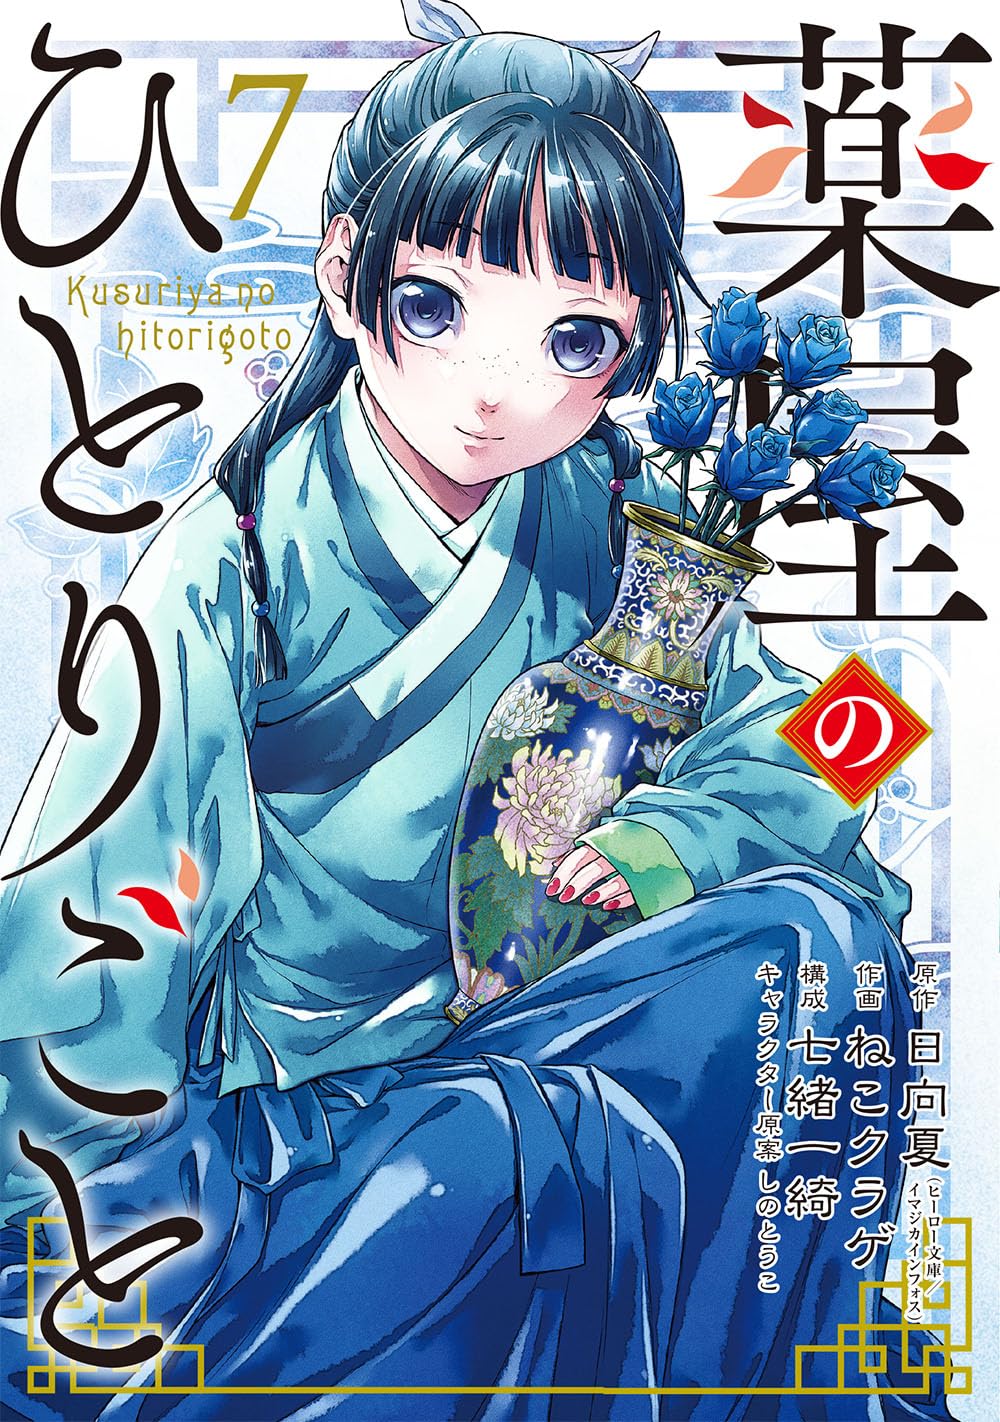 Kusuriya manga 07.jpg